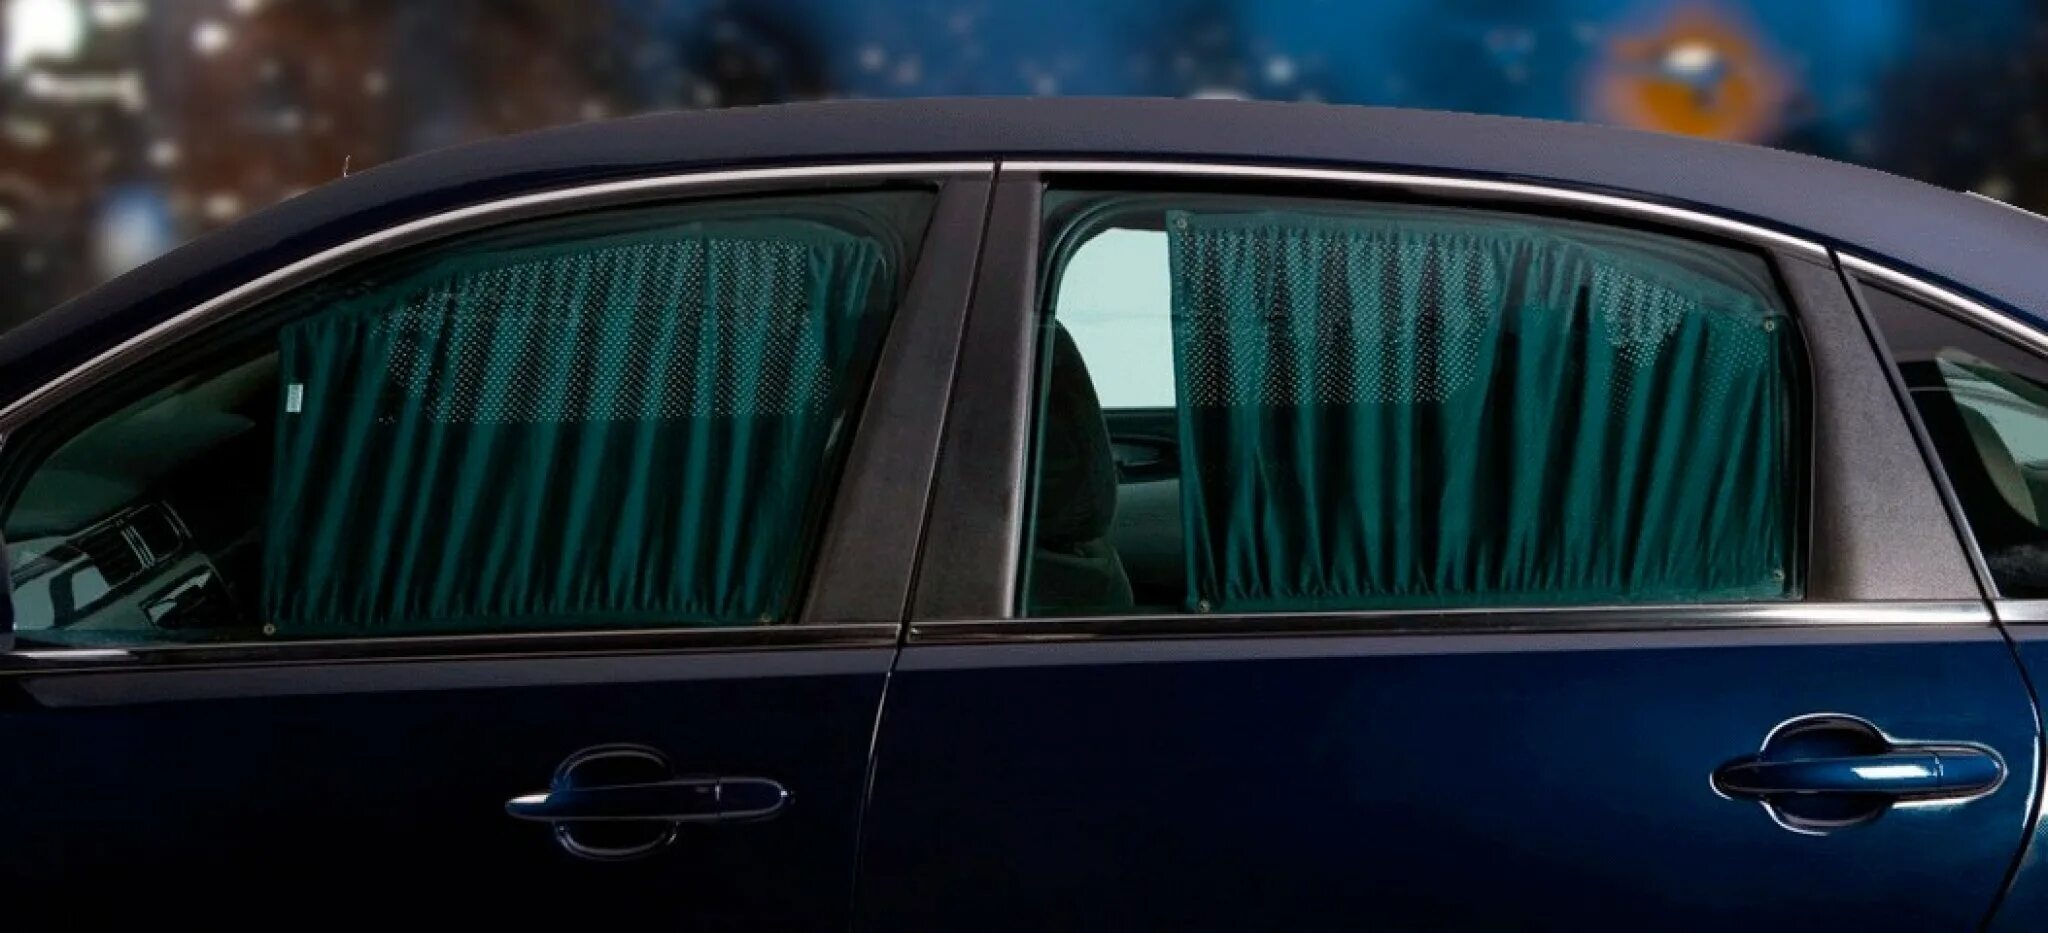 Окно авто. Окно машины снаружи. Приоткрытое окно автомобиля. Шторки разрешены на передние стекла.